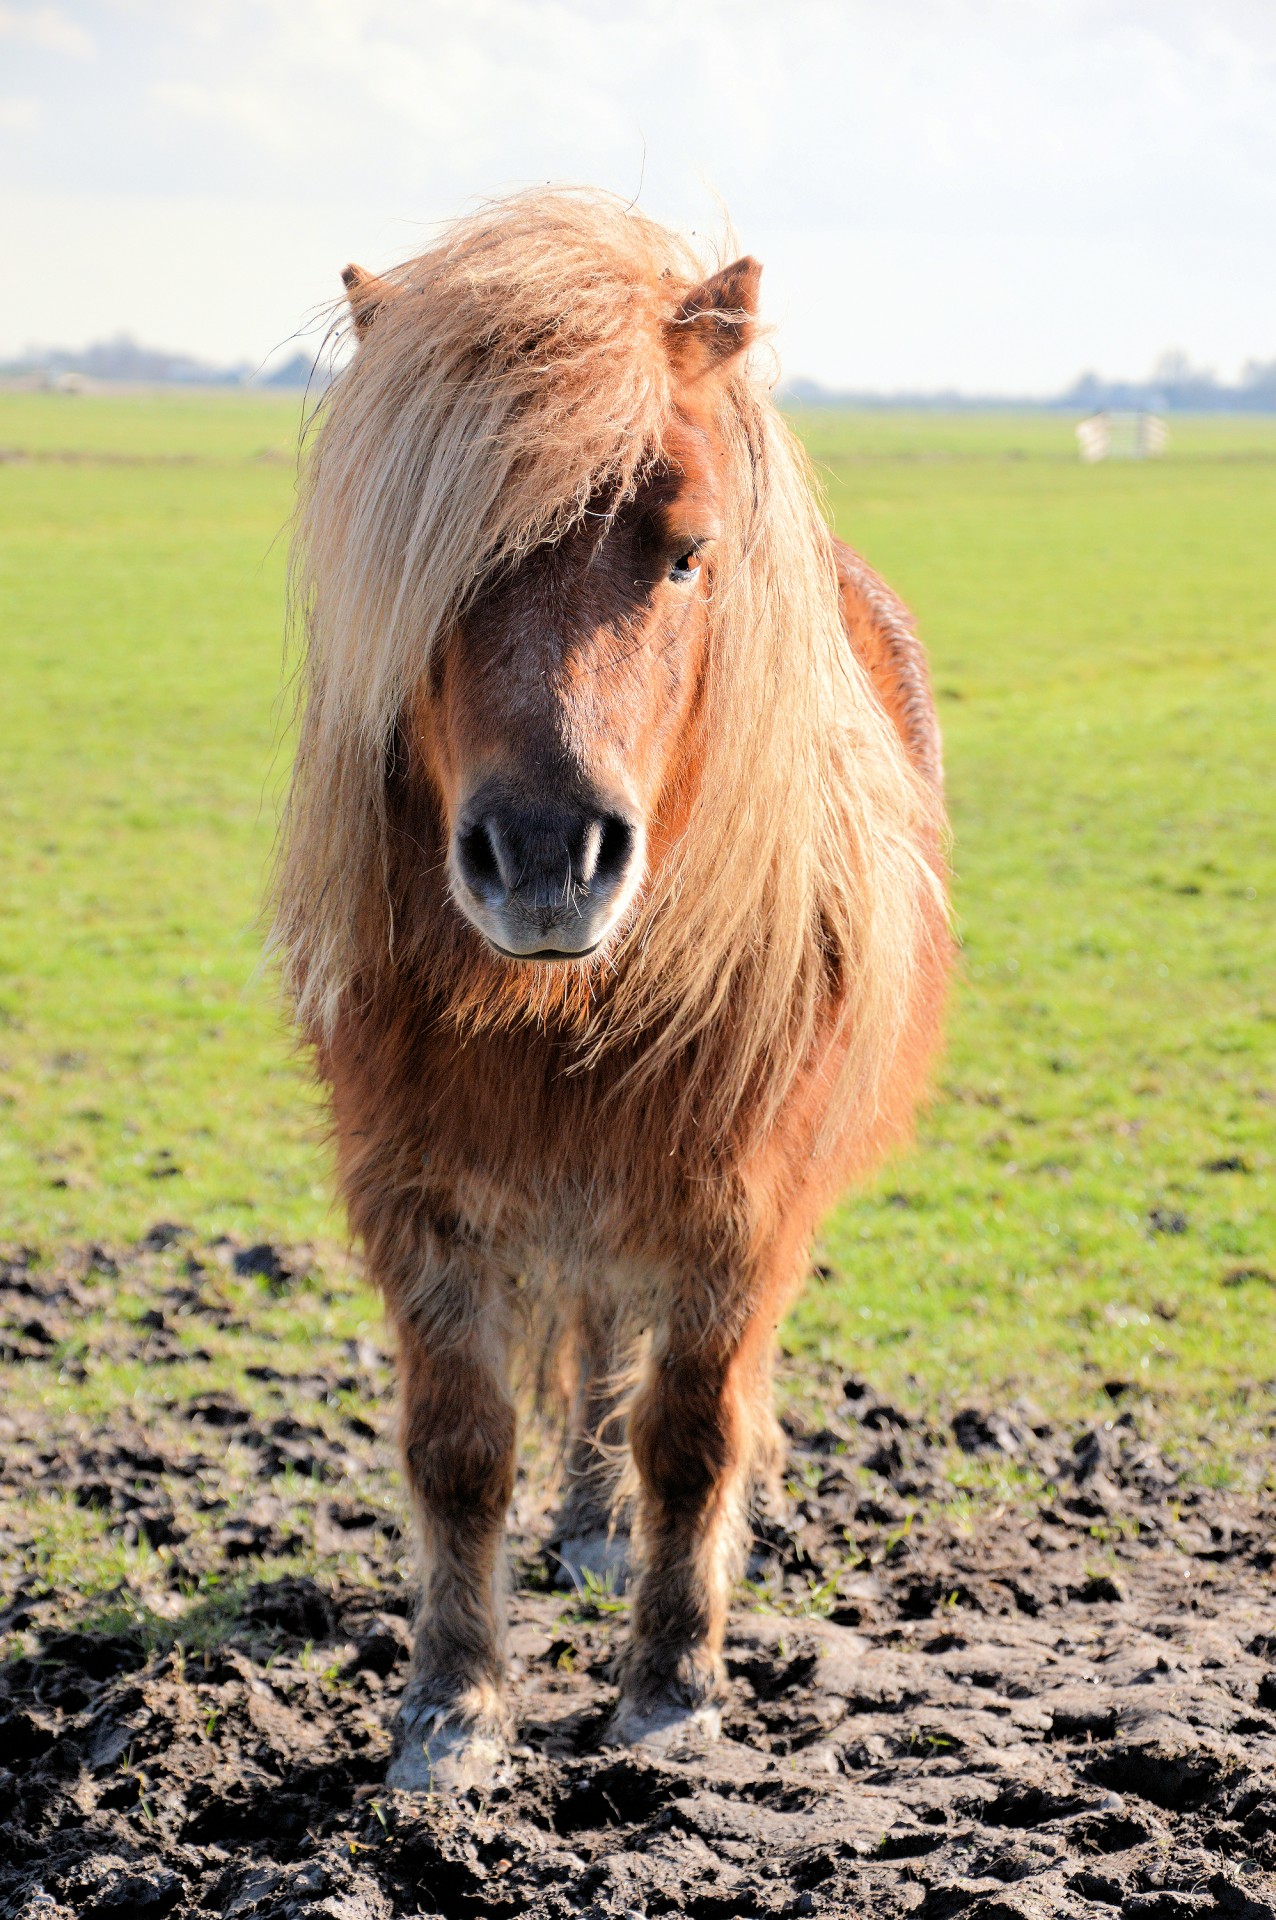 A Pony